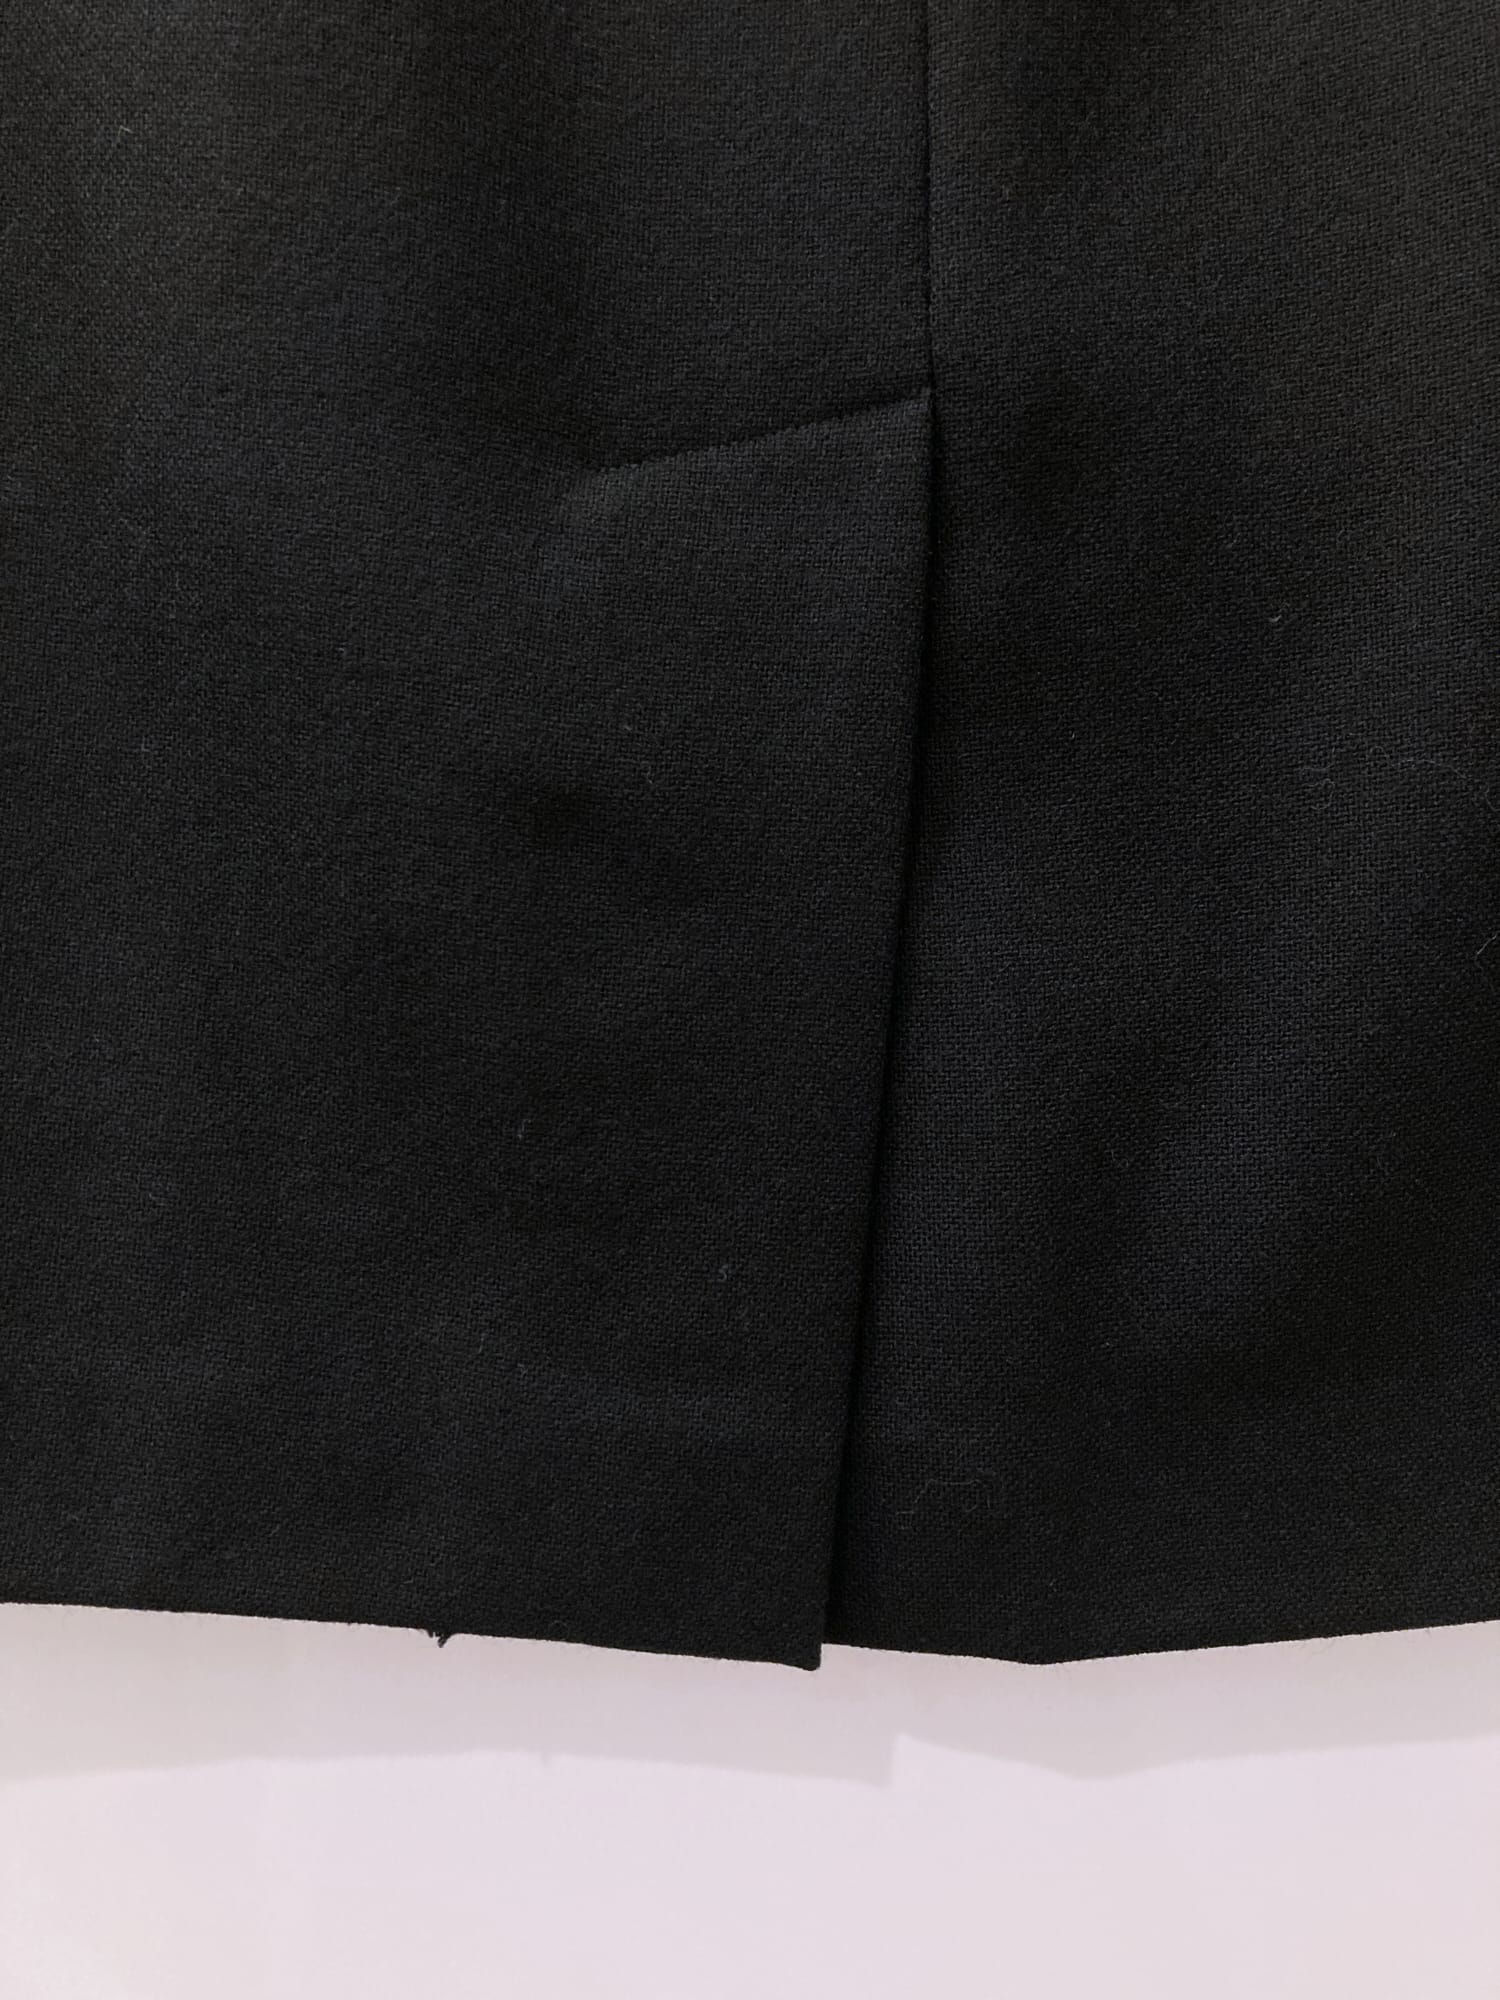 Dirk Bikkembergs 1990s 2000s black wool shortish skirt - size 42